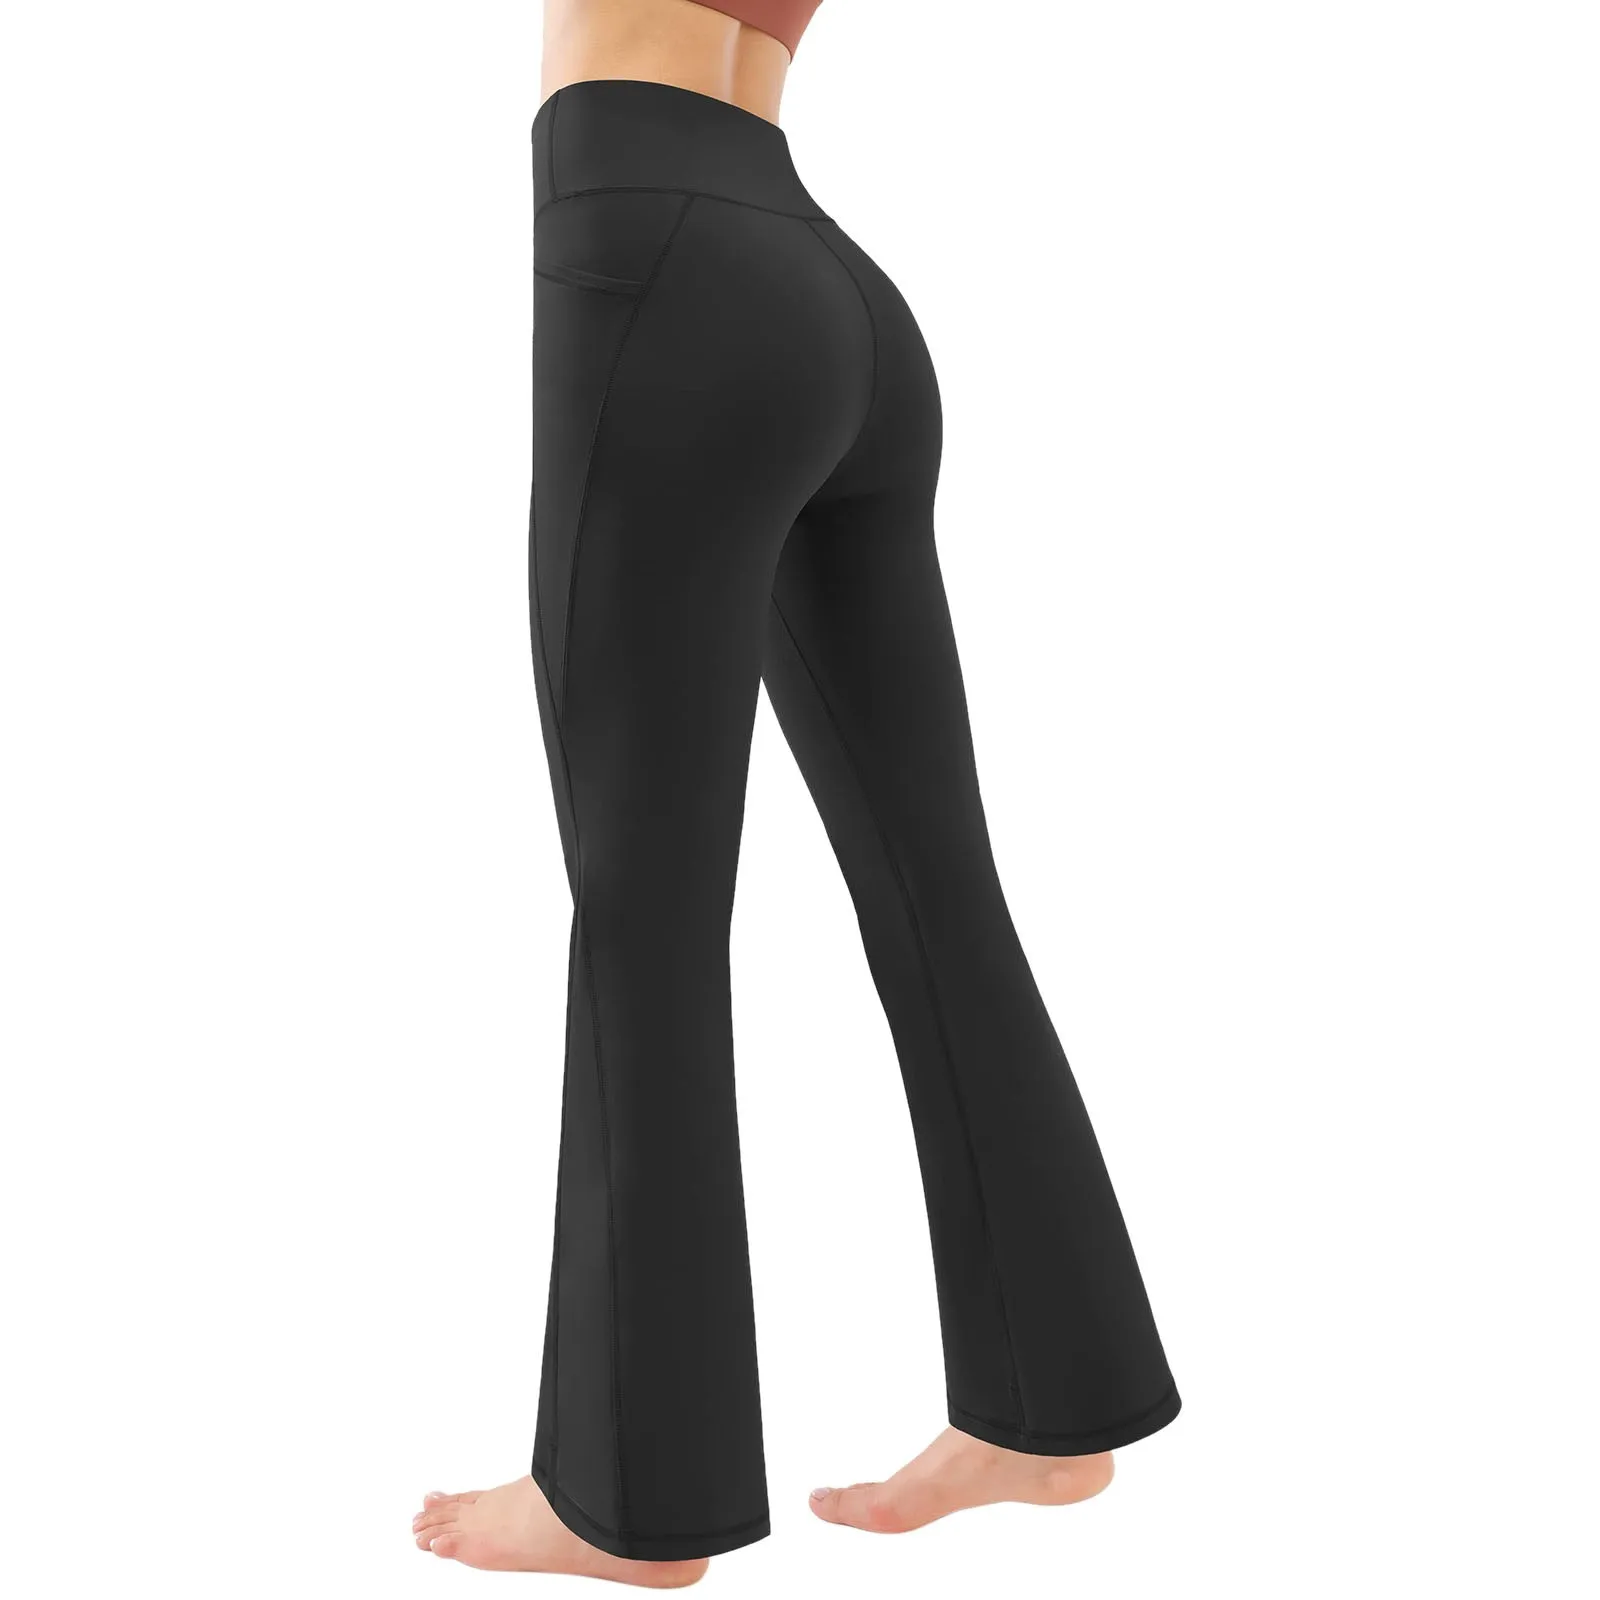 Расклешенные леггинсы Женские штаны для танцев, йоги, фитнеса, бега, леггинсы для тренировок, спортивные штаны для йоги, брюки-стрейч с высокой талией